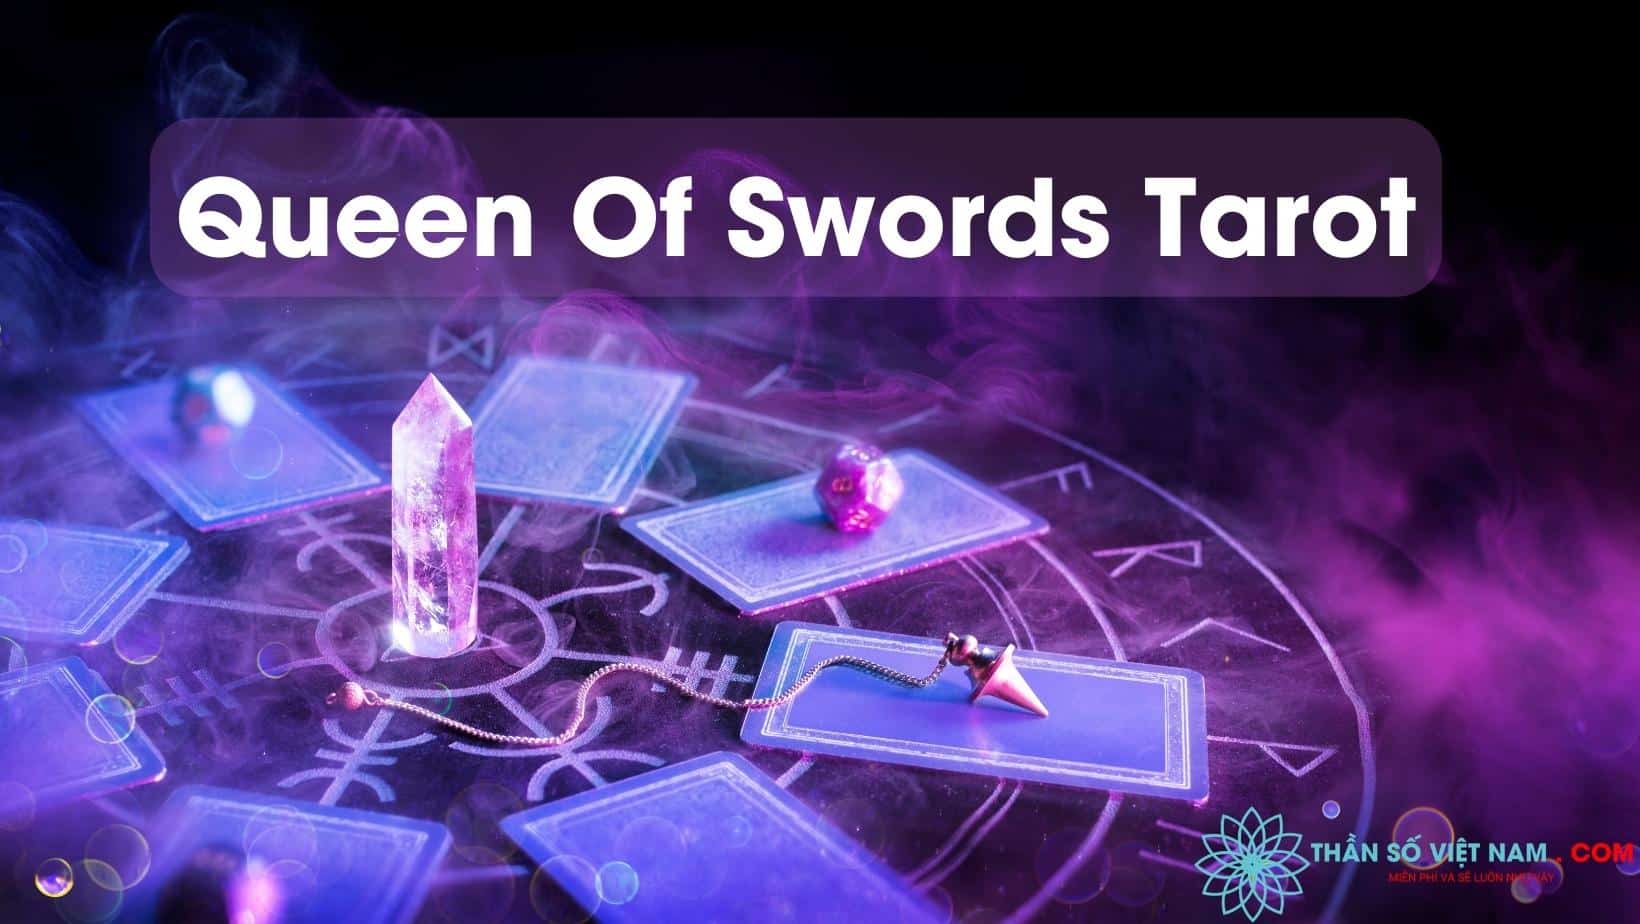 Queen Of Swords Tarot: Nếu bạn đang tìm kiếm sự lãnh đạo, sự thông thái và lòng can đảm, hãy ngắm nhìn Queen of Swords Tarot. Lá bài này thể hiện một nữ hoàng tự tin và sáng suốt, sẵn sàng đương đầu với bất kỳ thử thách nào. Hãy xem hình và cảm nhận được cảm giác tự tin và kiên định của nữ hoàng này.